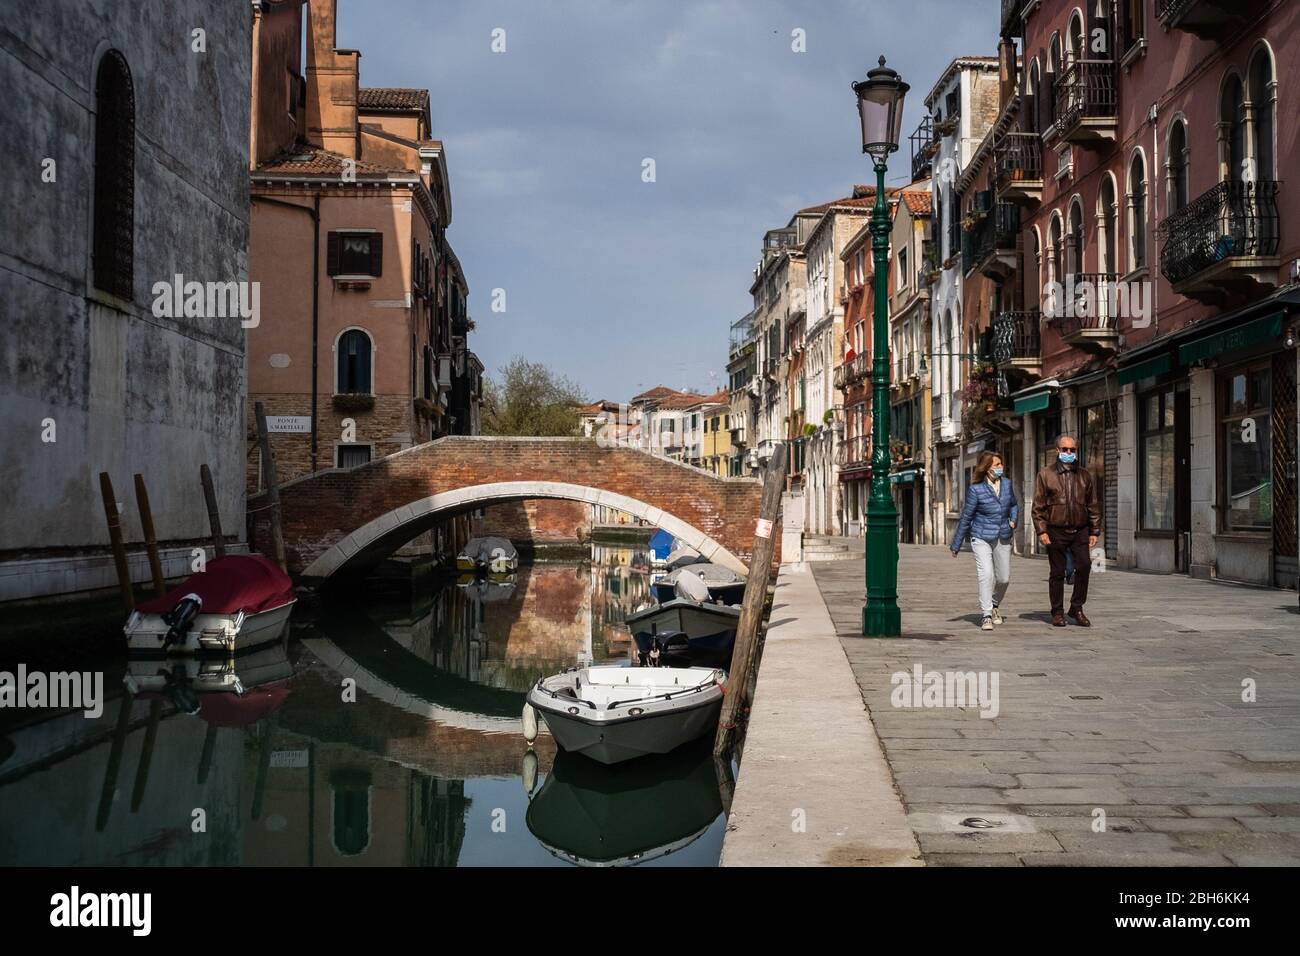 VENEZIA, ITALIA - APRILE 2020: La gente cammina accanto ad un canale vuoto durante la chiusura nazionale per la pandemia Covid-19. Foto Stock